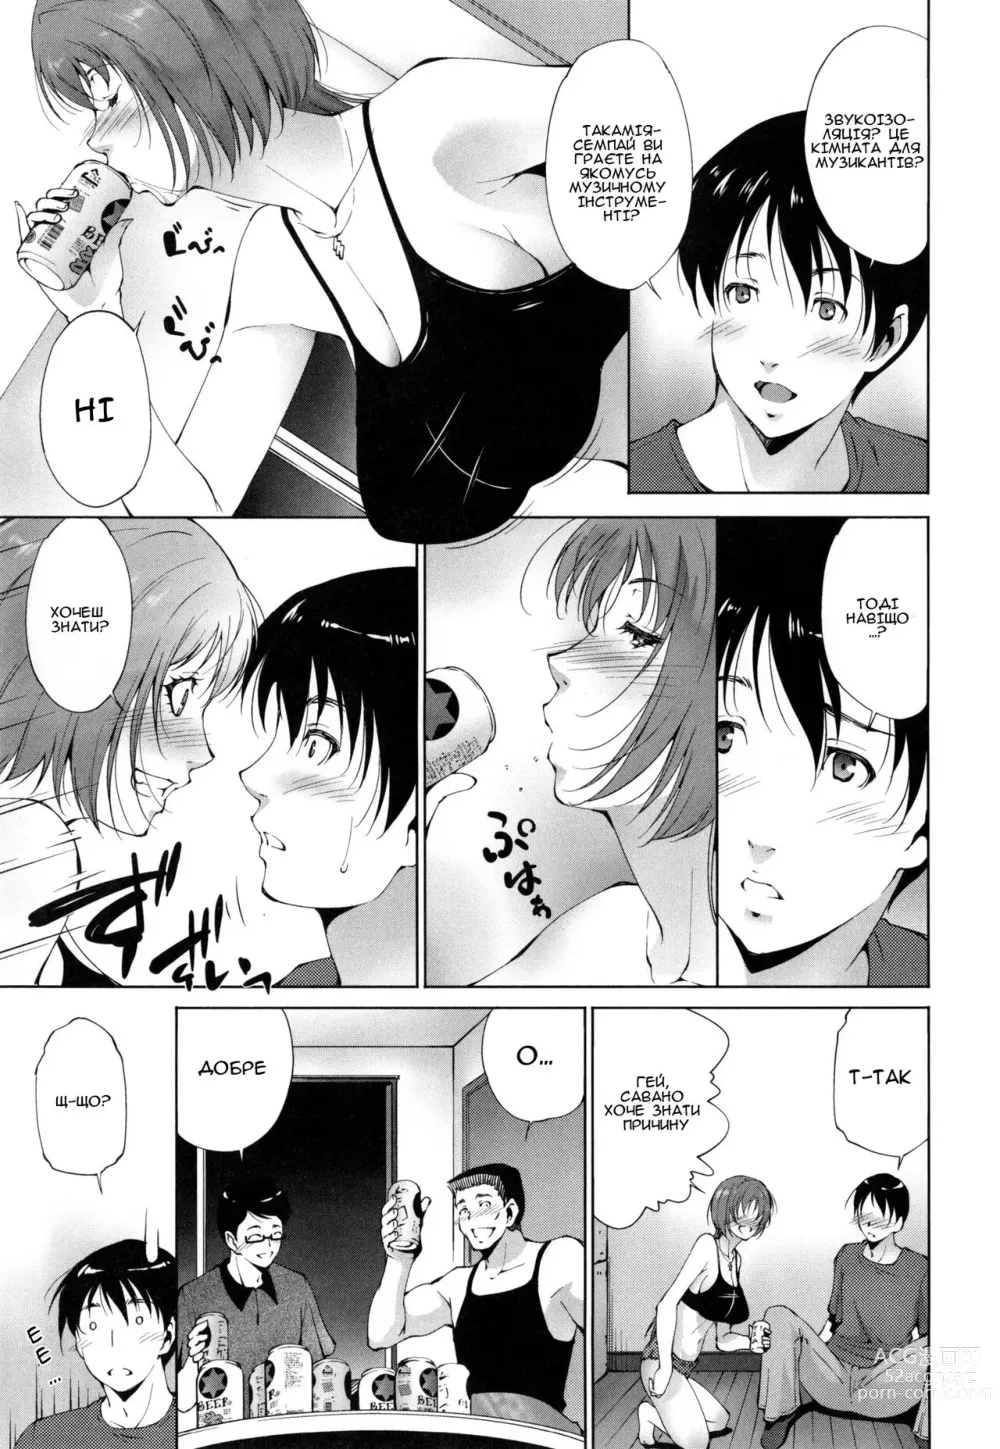 Page 3 of manga Причина, через яку вона змінила квартиру (decensored)